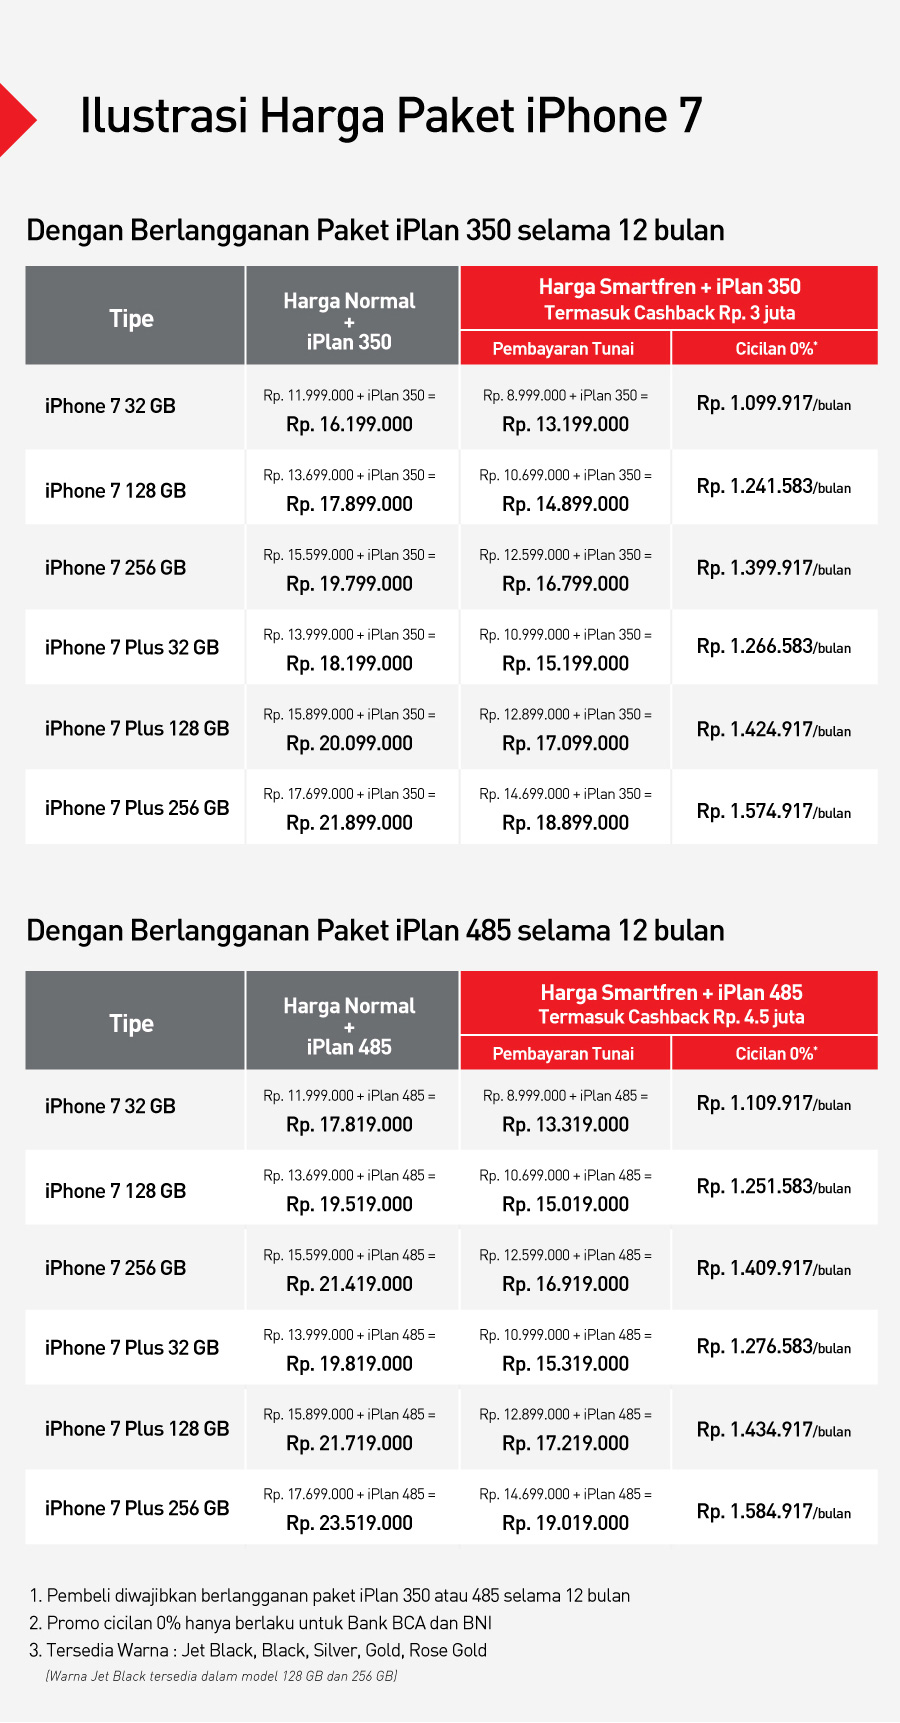 Inilah harga iPhone 7 dan iPhone 7 Plus di Indonesia bundling dengan Smartfren